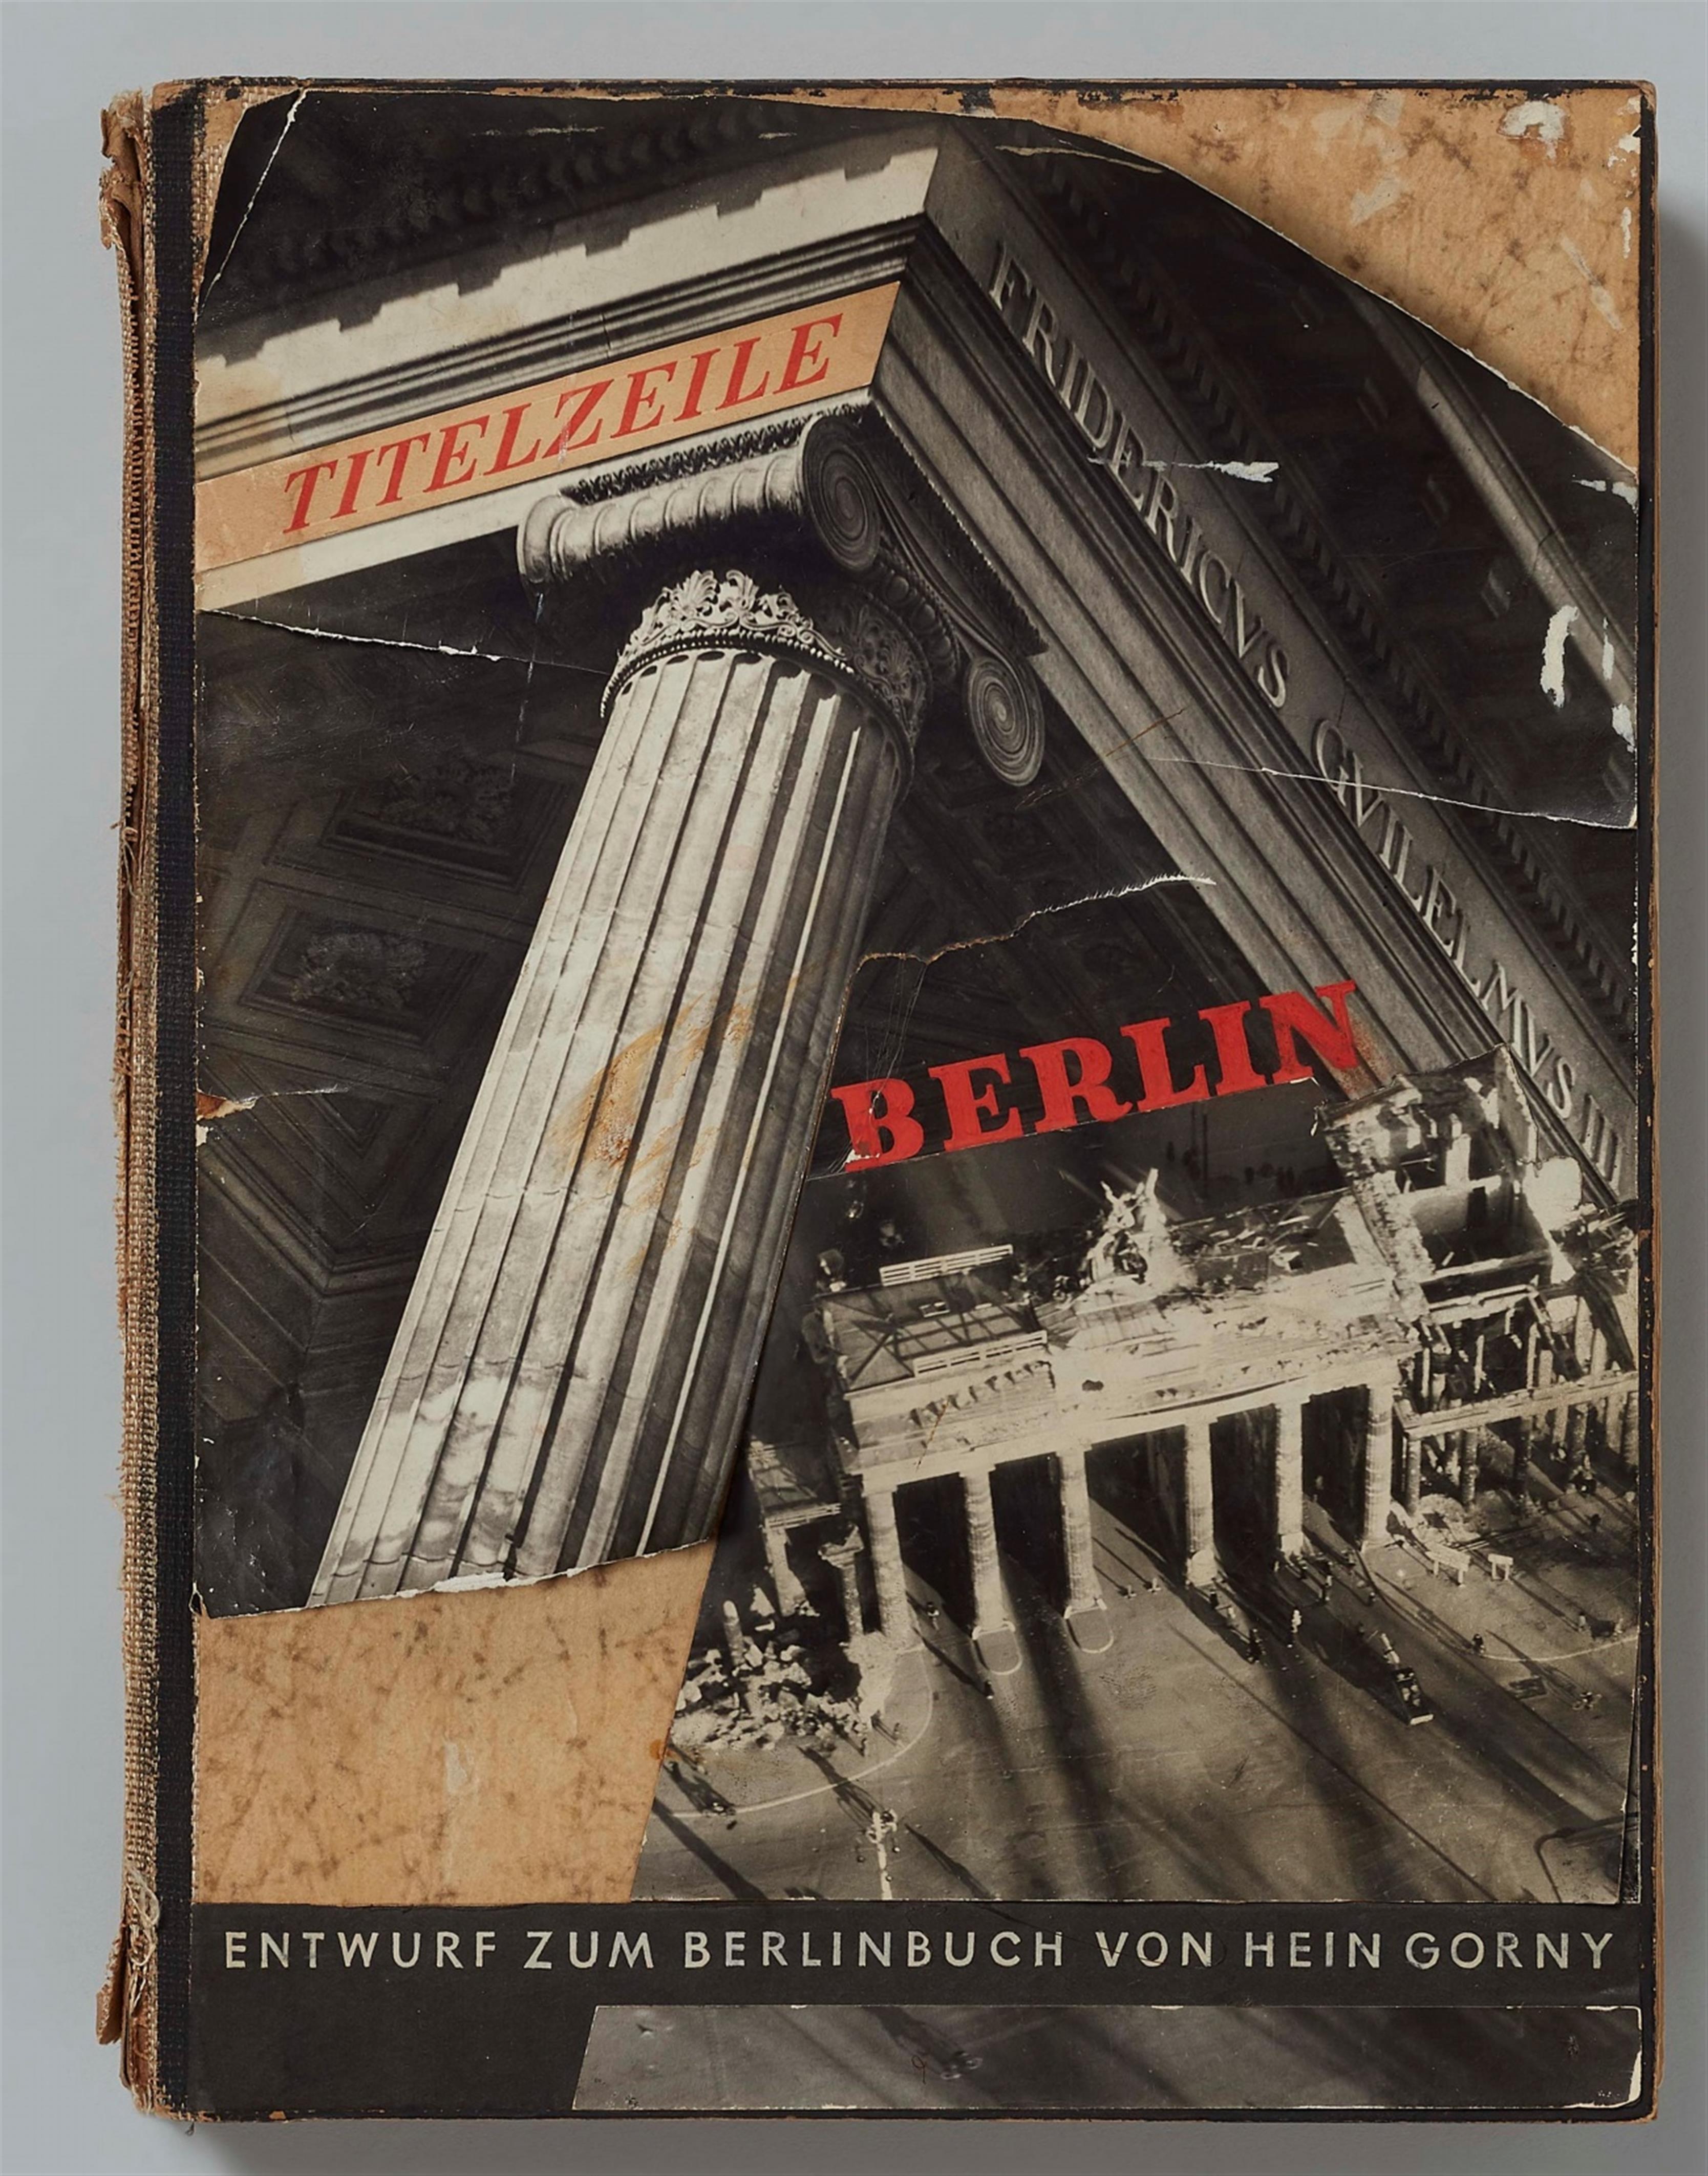 Hein Gorny - Entwurf zum Berlinbuch - image-1